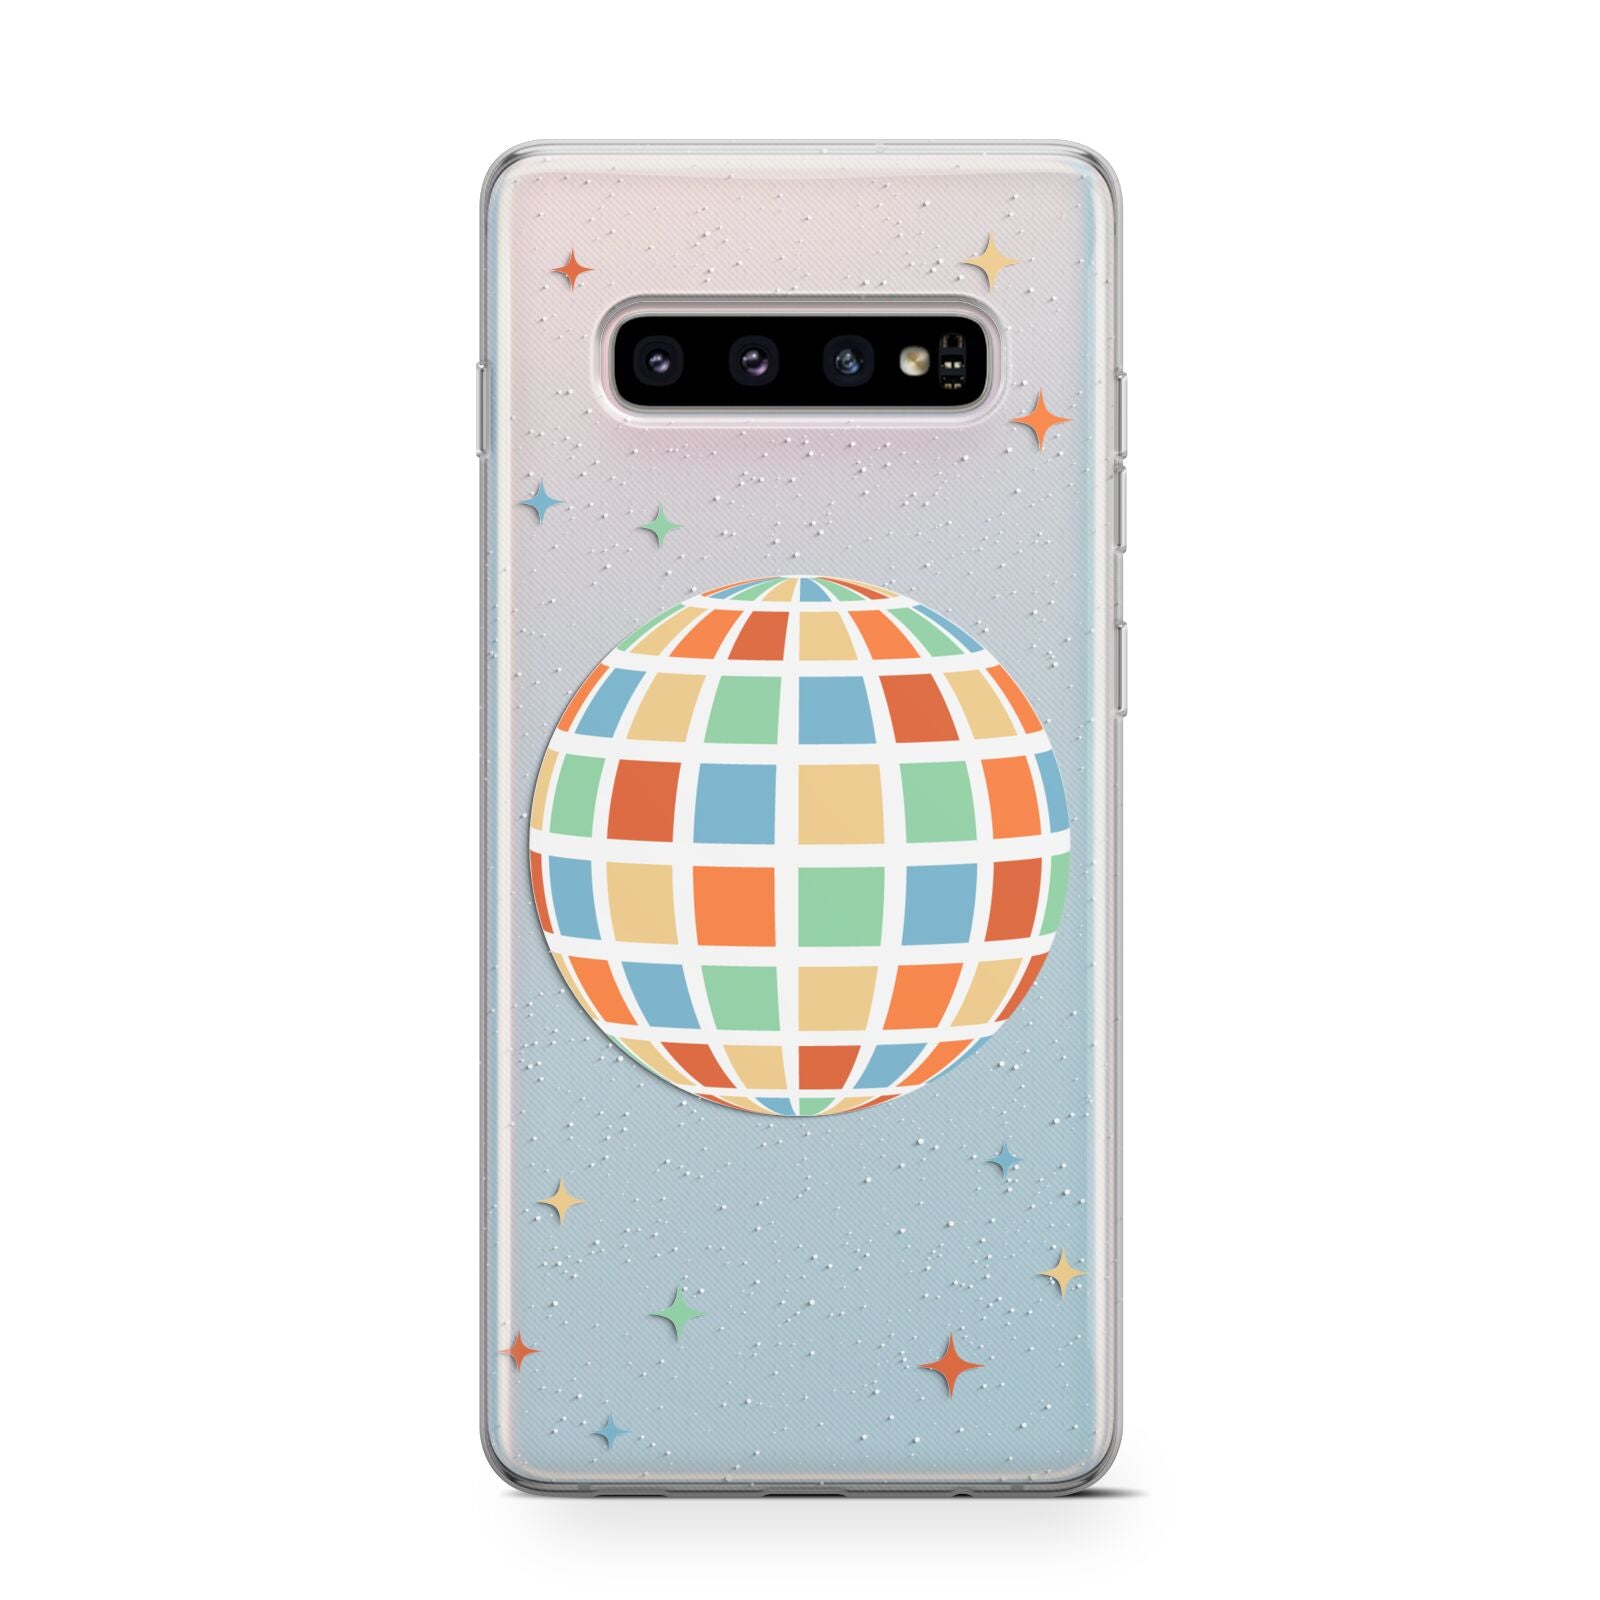 Disco Ball Samsung Galaxy S10 Case